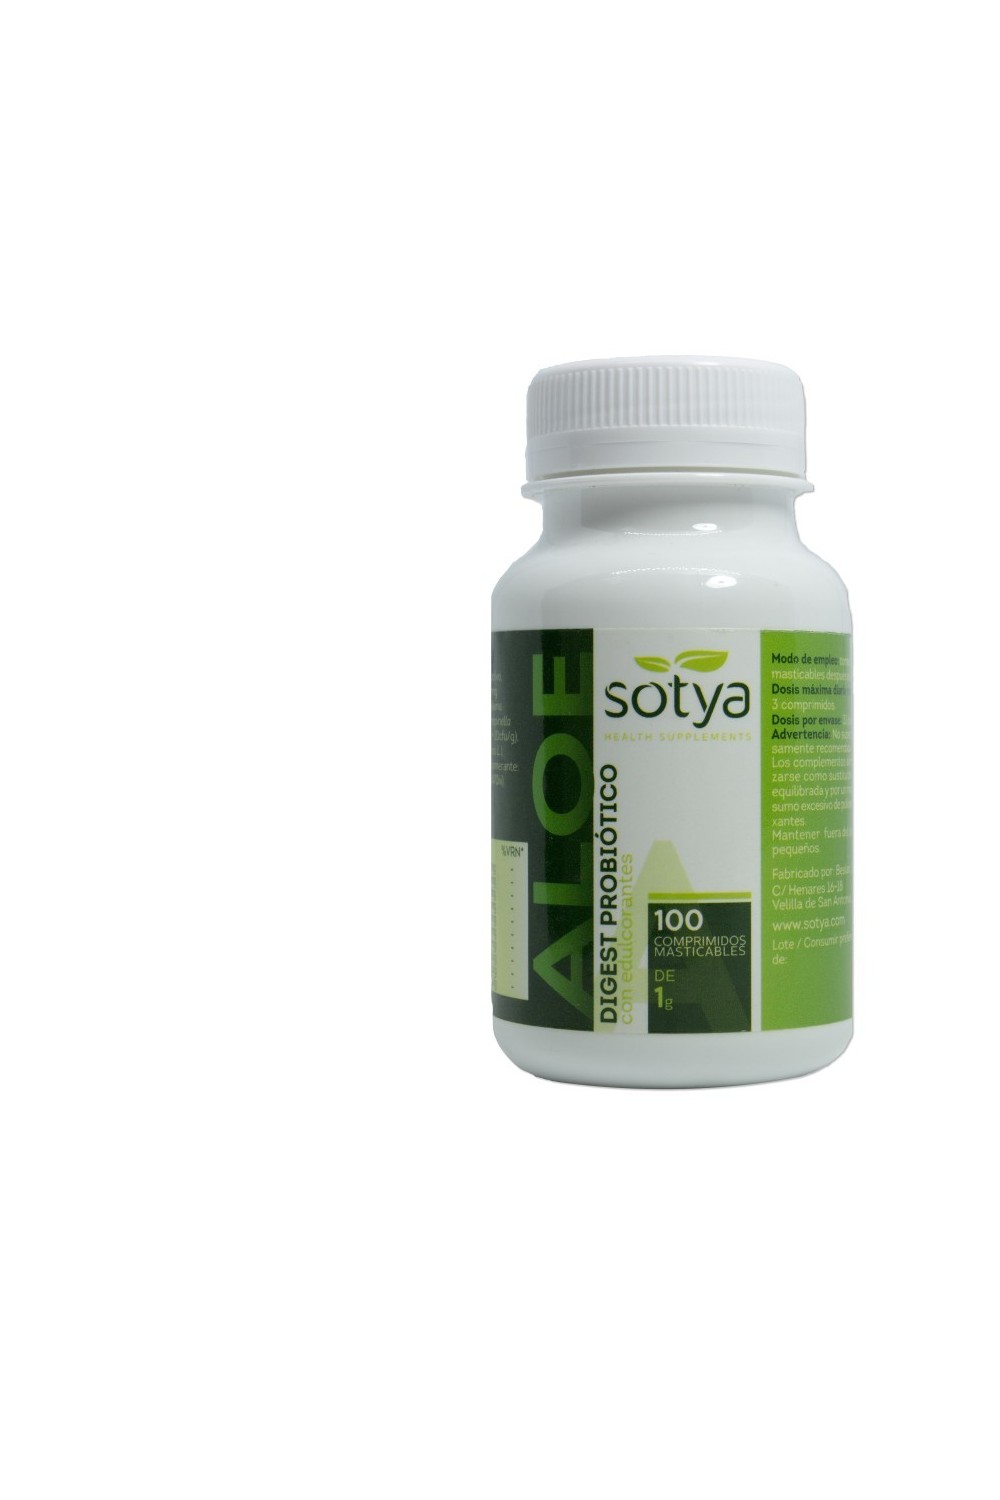 Sotya Aloe Digest Probiotico 100 Compr Masticable 1g